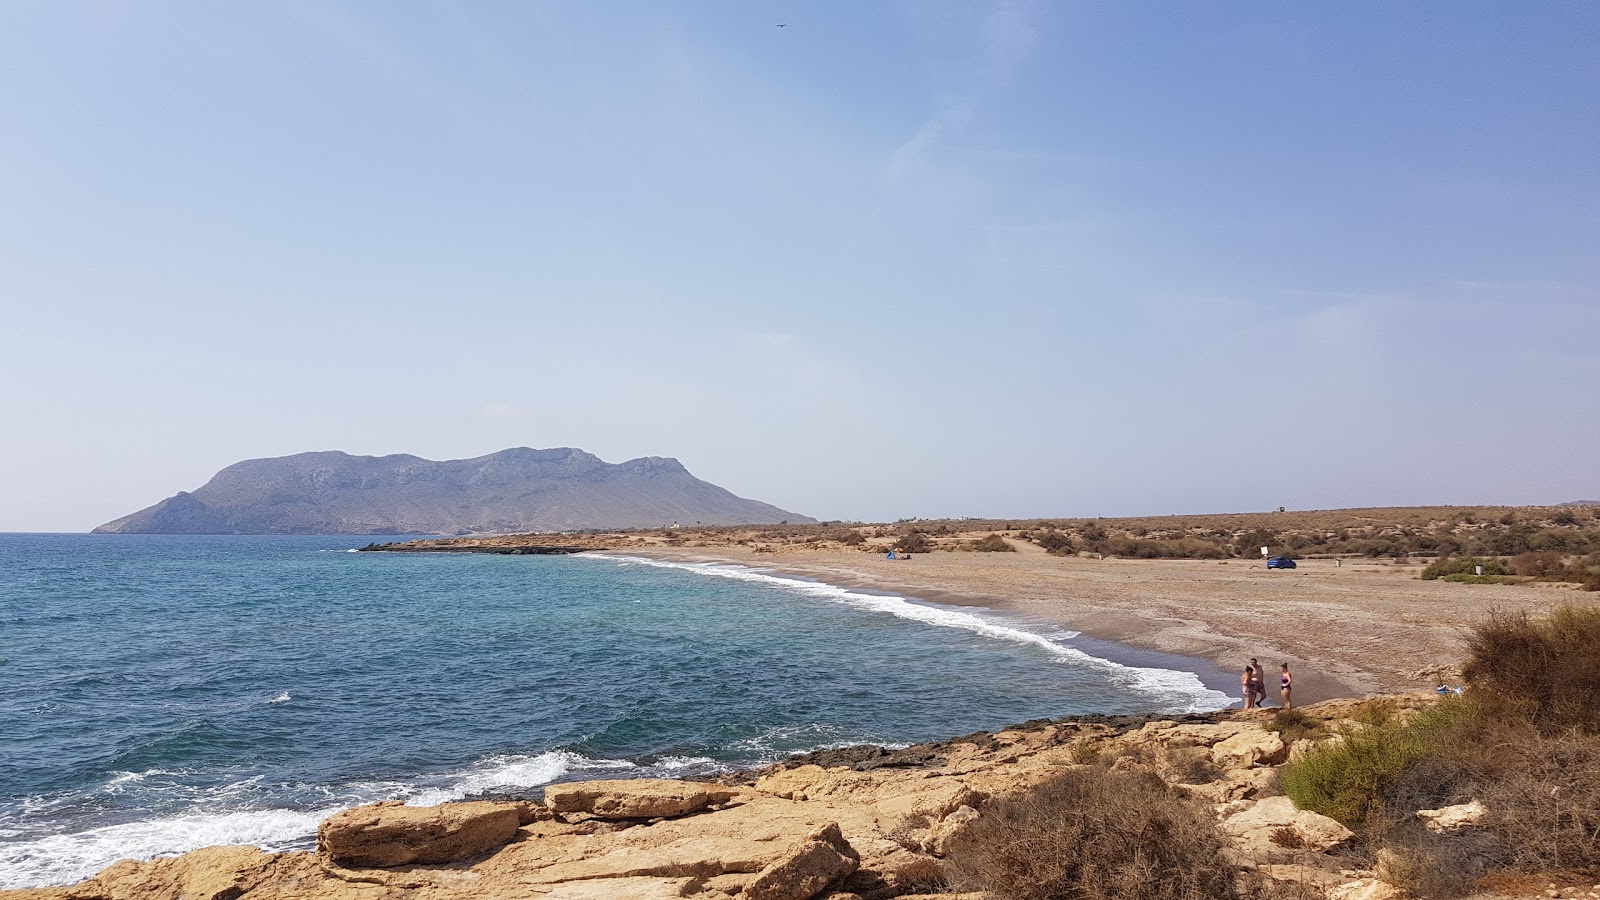 Playa de Rambla Elena'in fotoğrafı gri kum yüzey ile